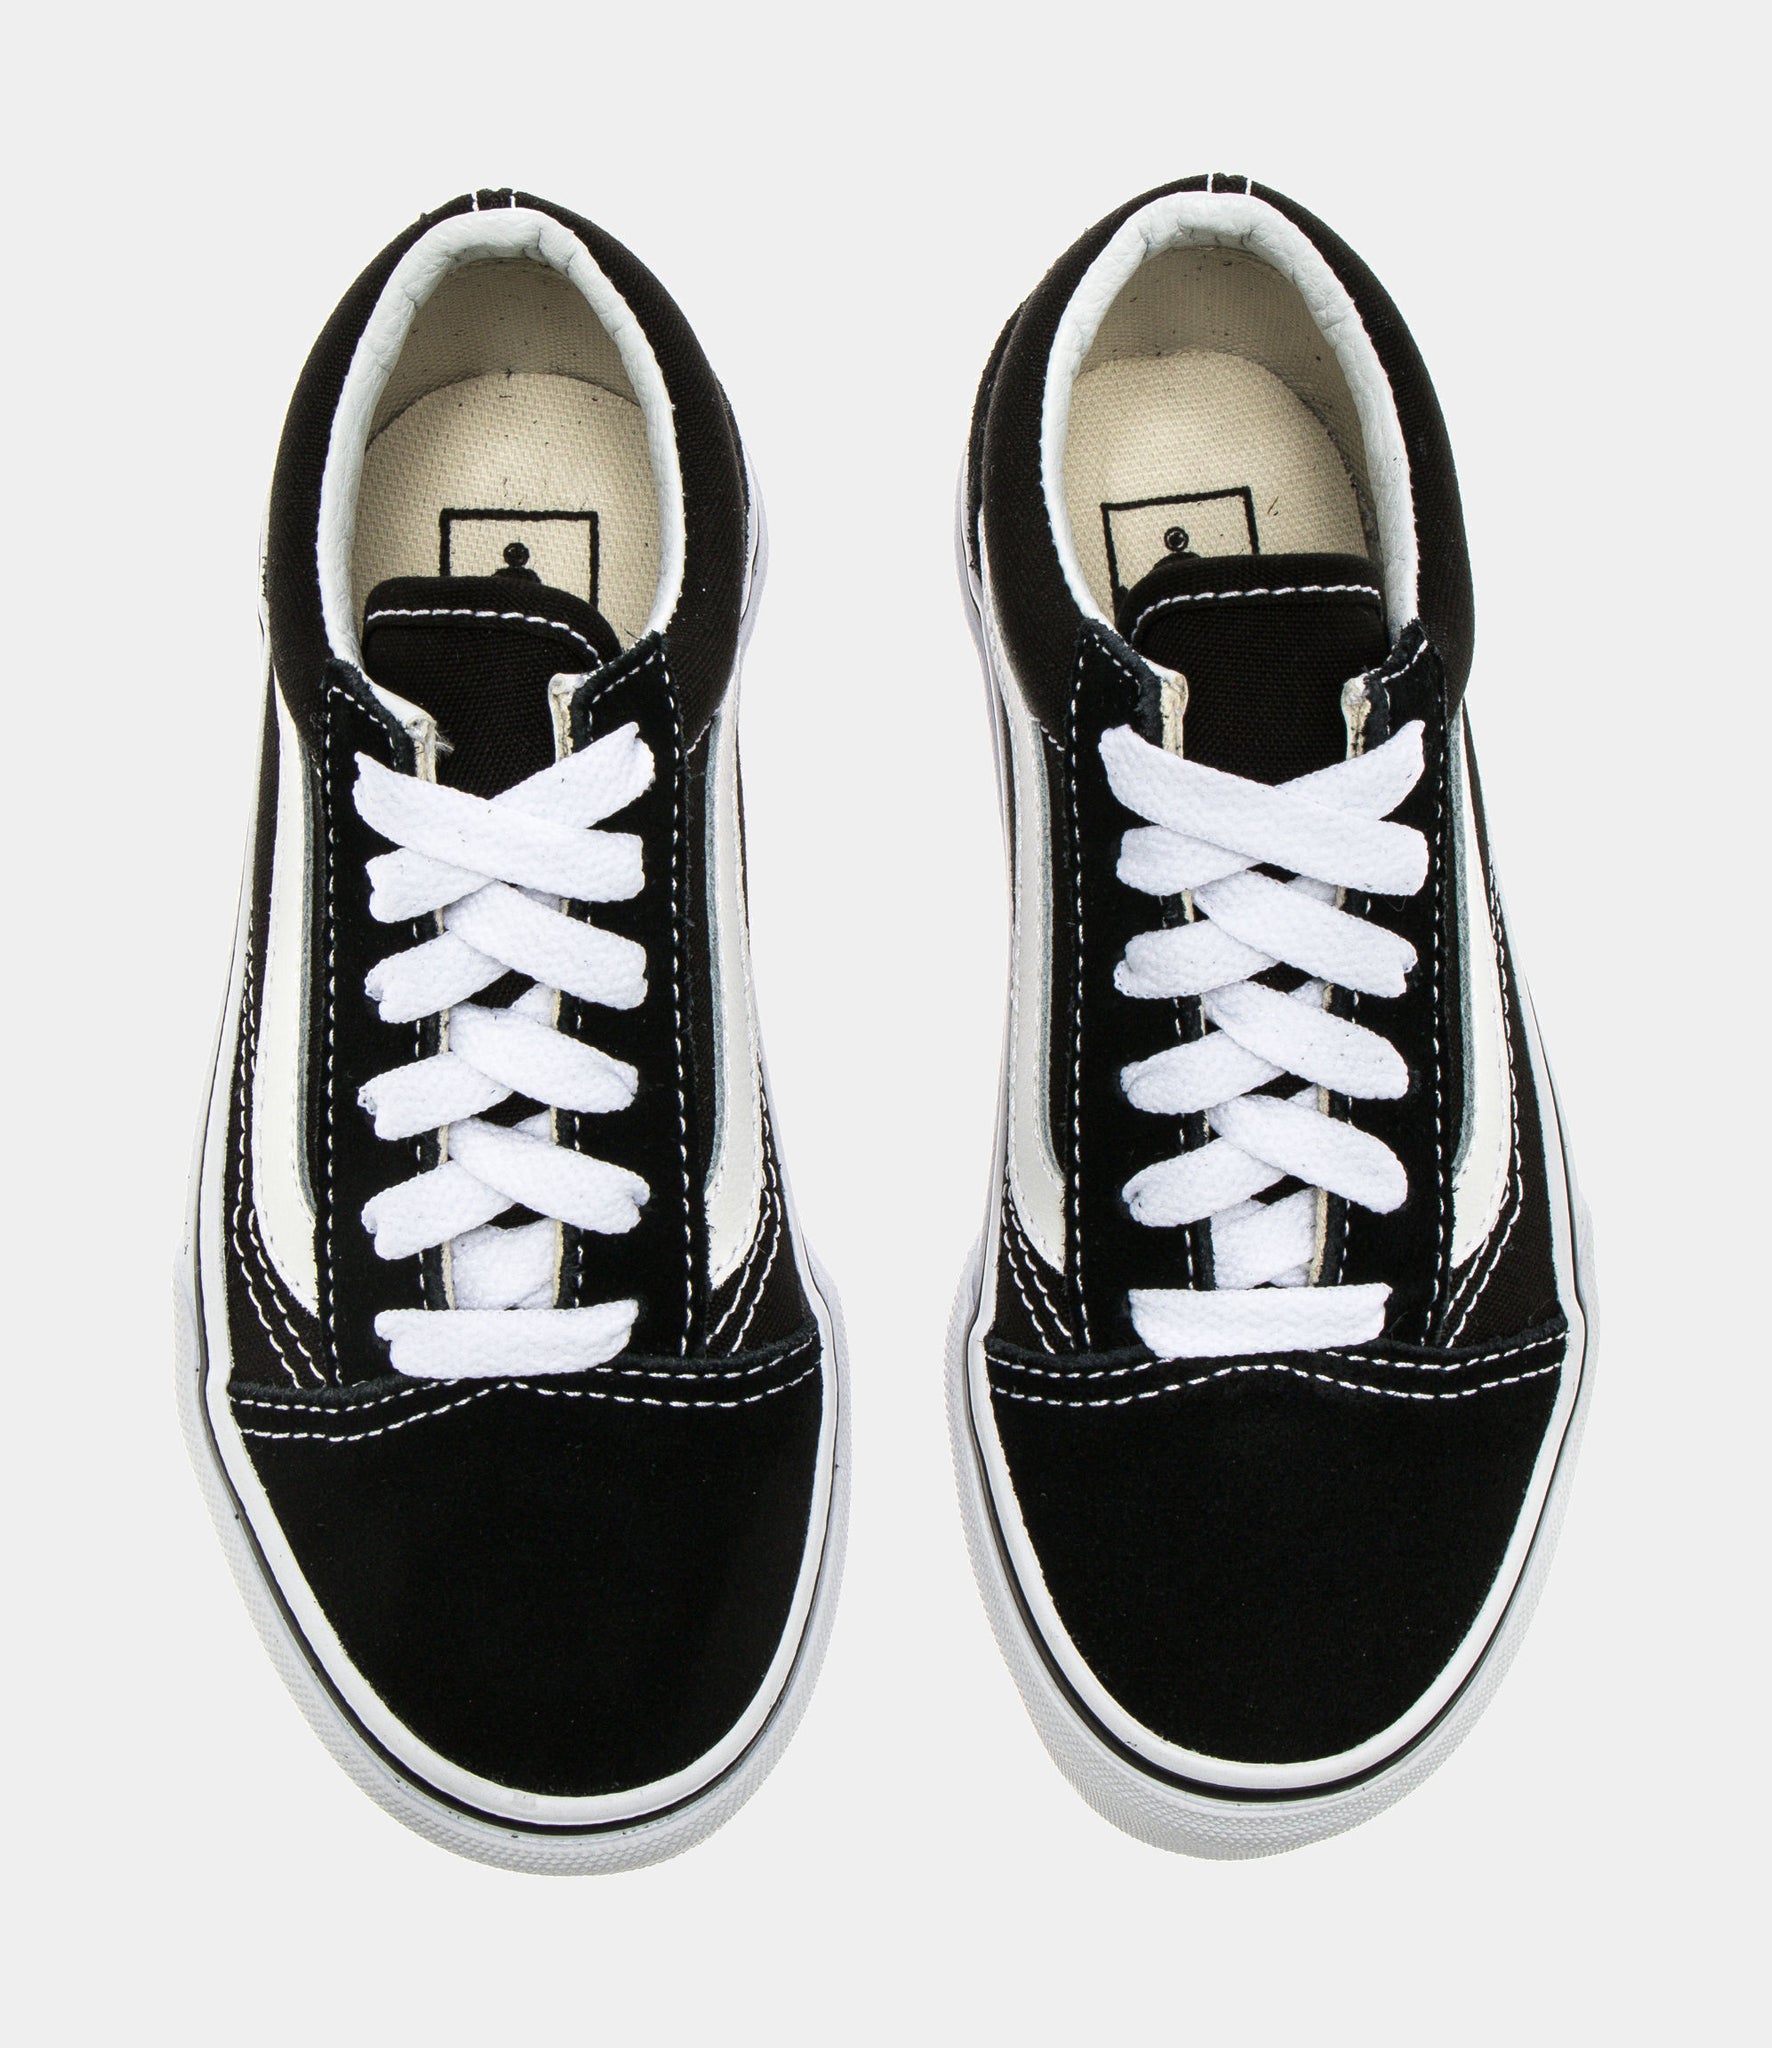 Vans Old Skool Preschool Skate Shoes Black W9T6BT – Shoe Palace